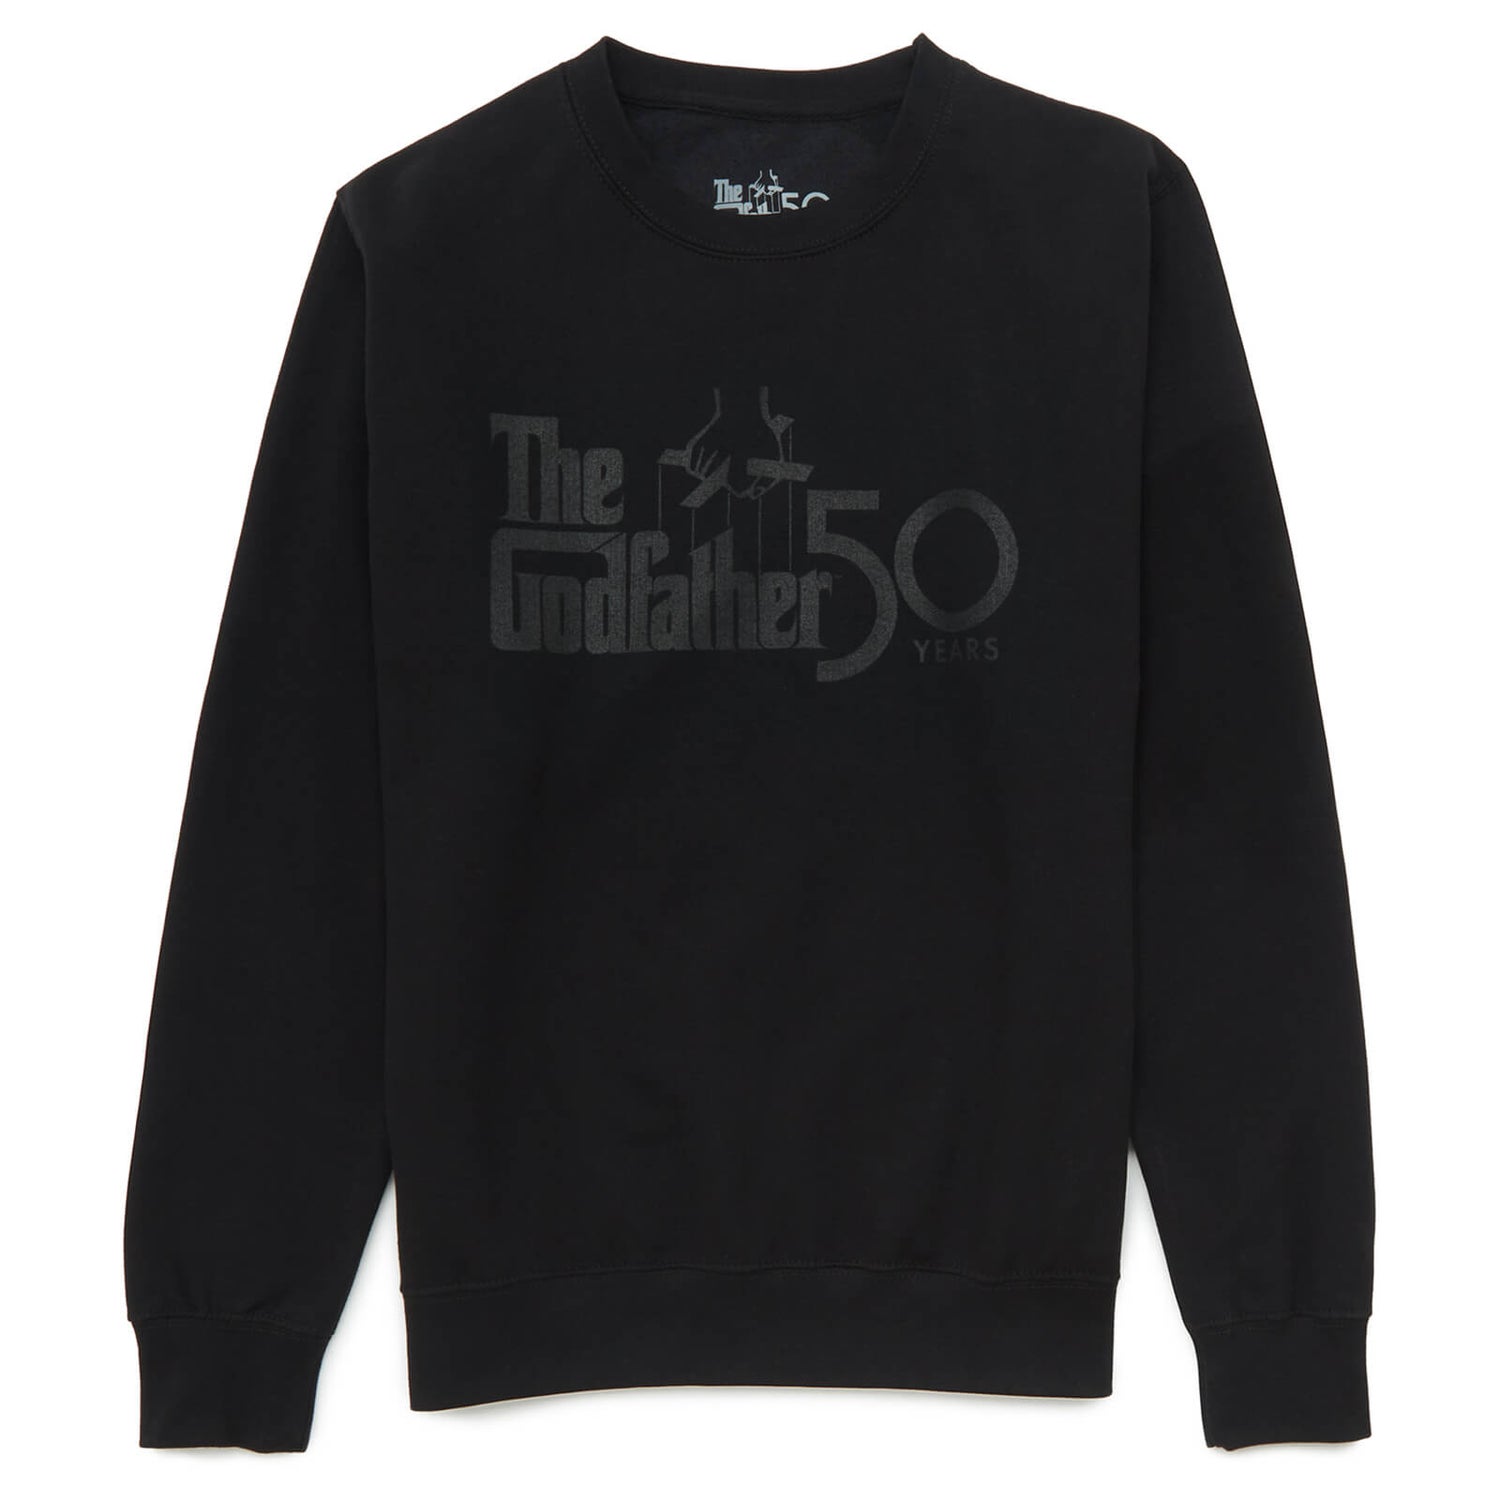 The Godfather 50 Years Sweatshirt - Black